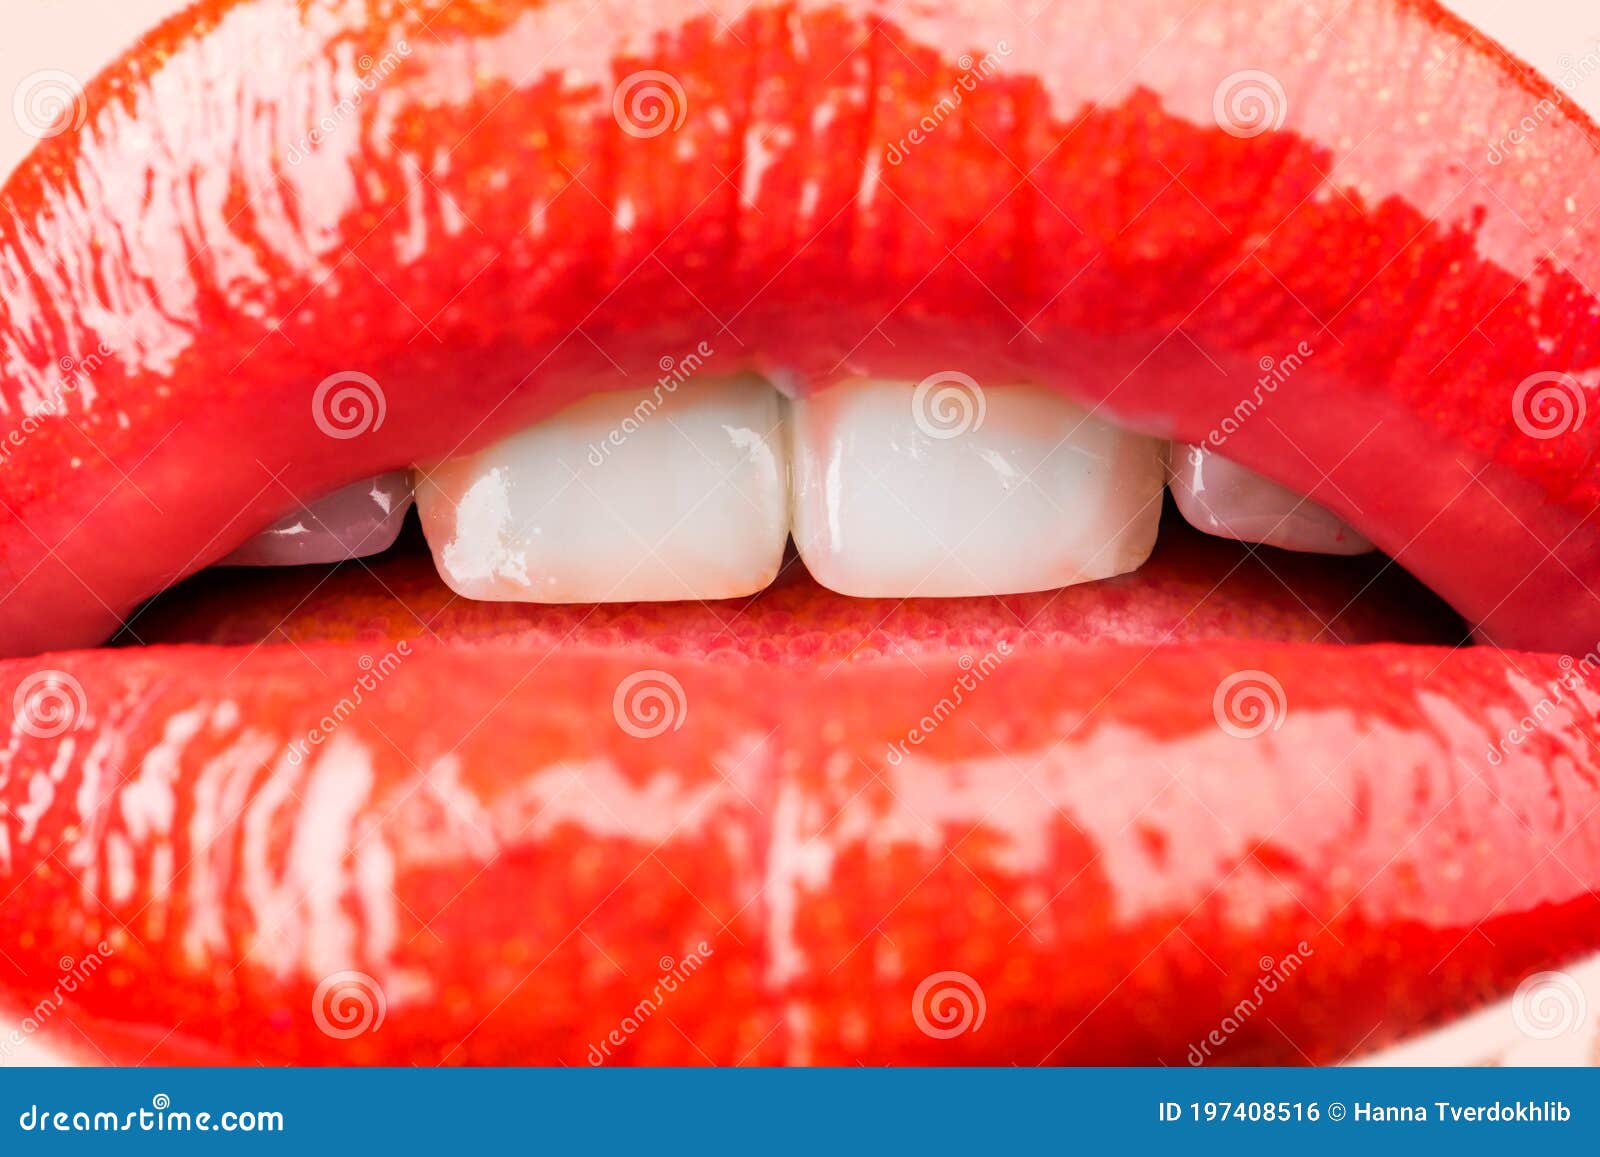 嘴唇 吻 红色 爱情 亲亲的嘴 口红 爱 嘴里 女子 感情图片下载 - 觅知网